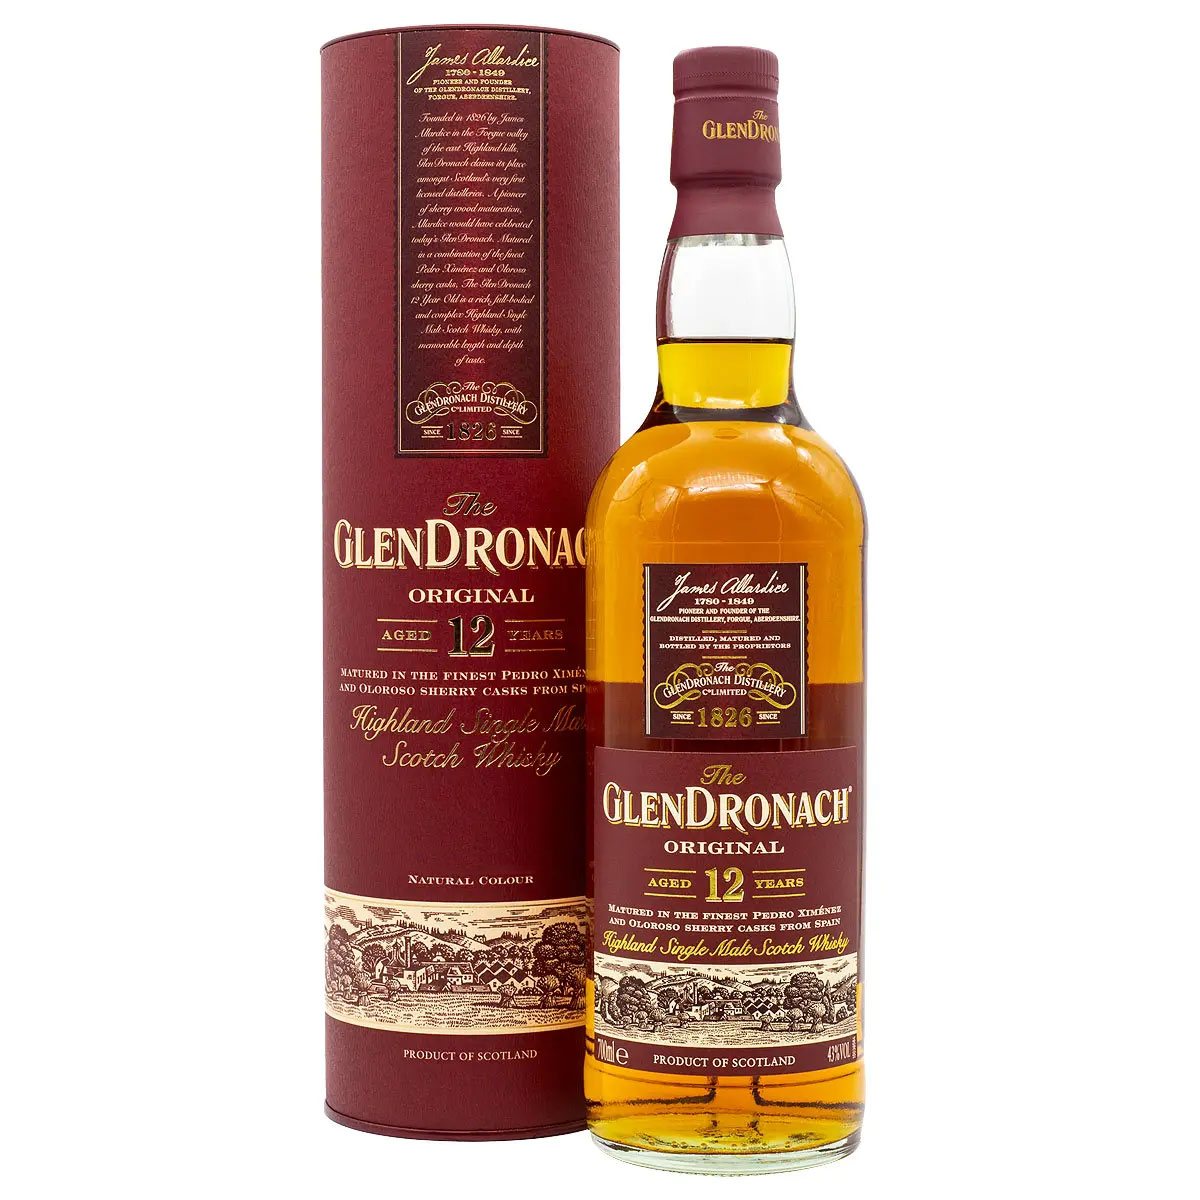 12 jähriger Glendronach Whisky, abgefüllt 2020